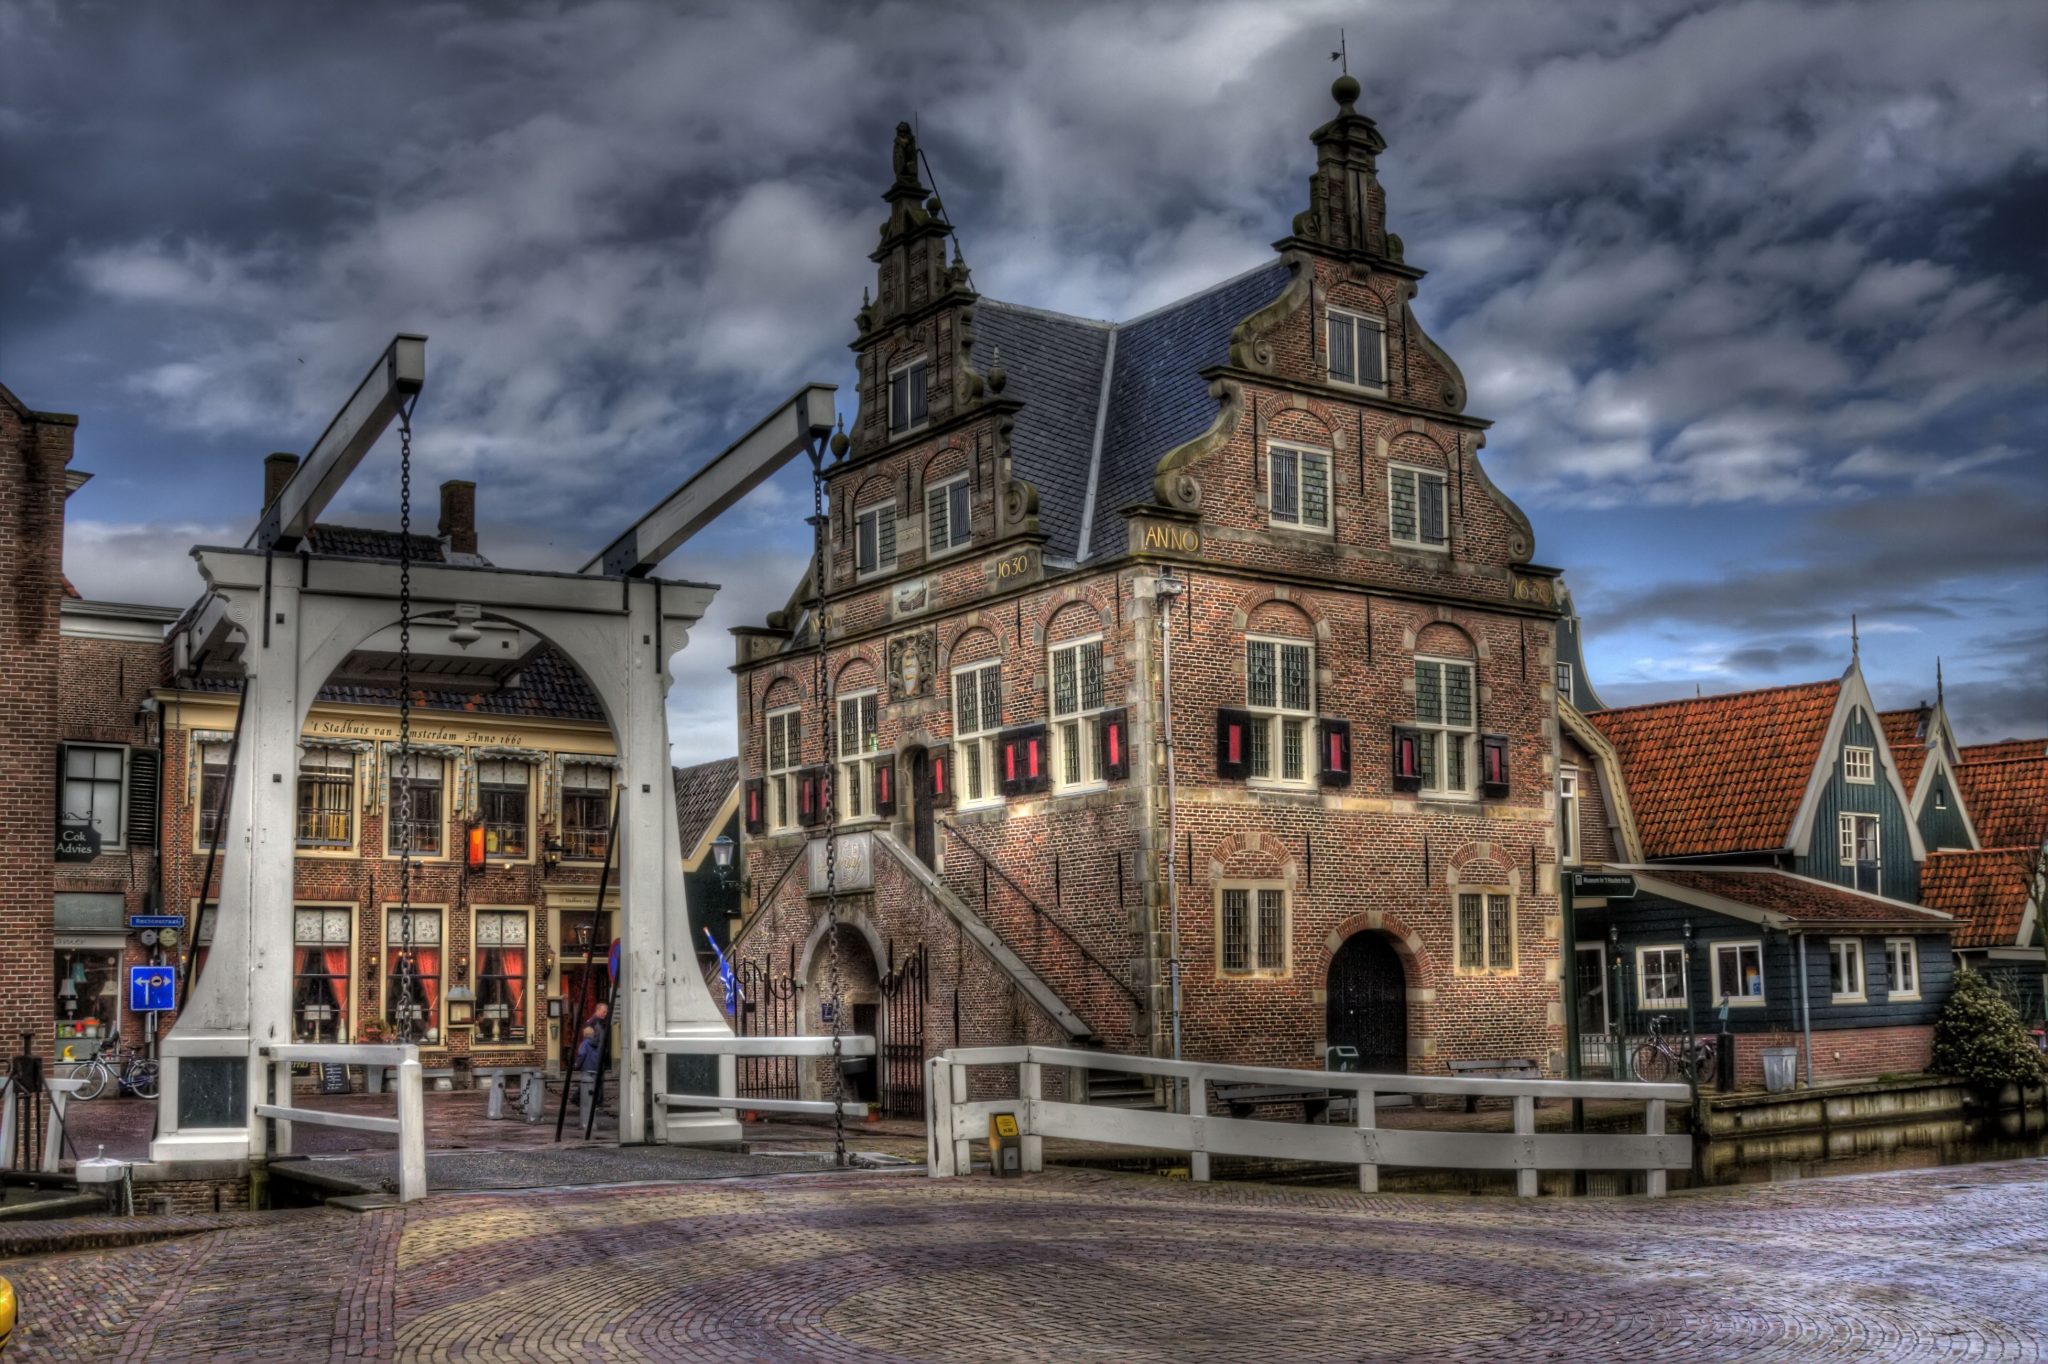 Turismo na Holanda: 3 cidades para visitar perto de Amsterdam | Conexão